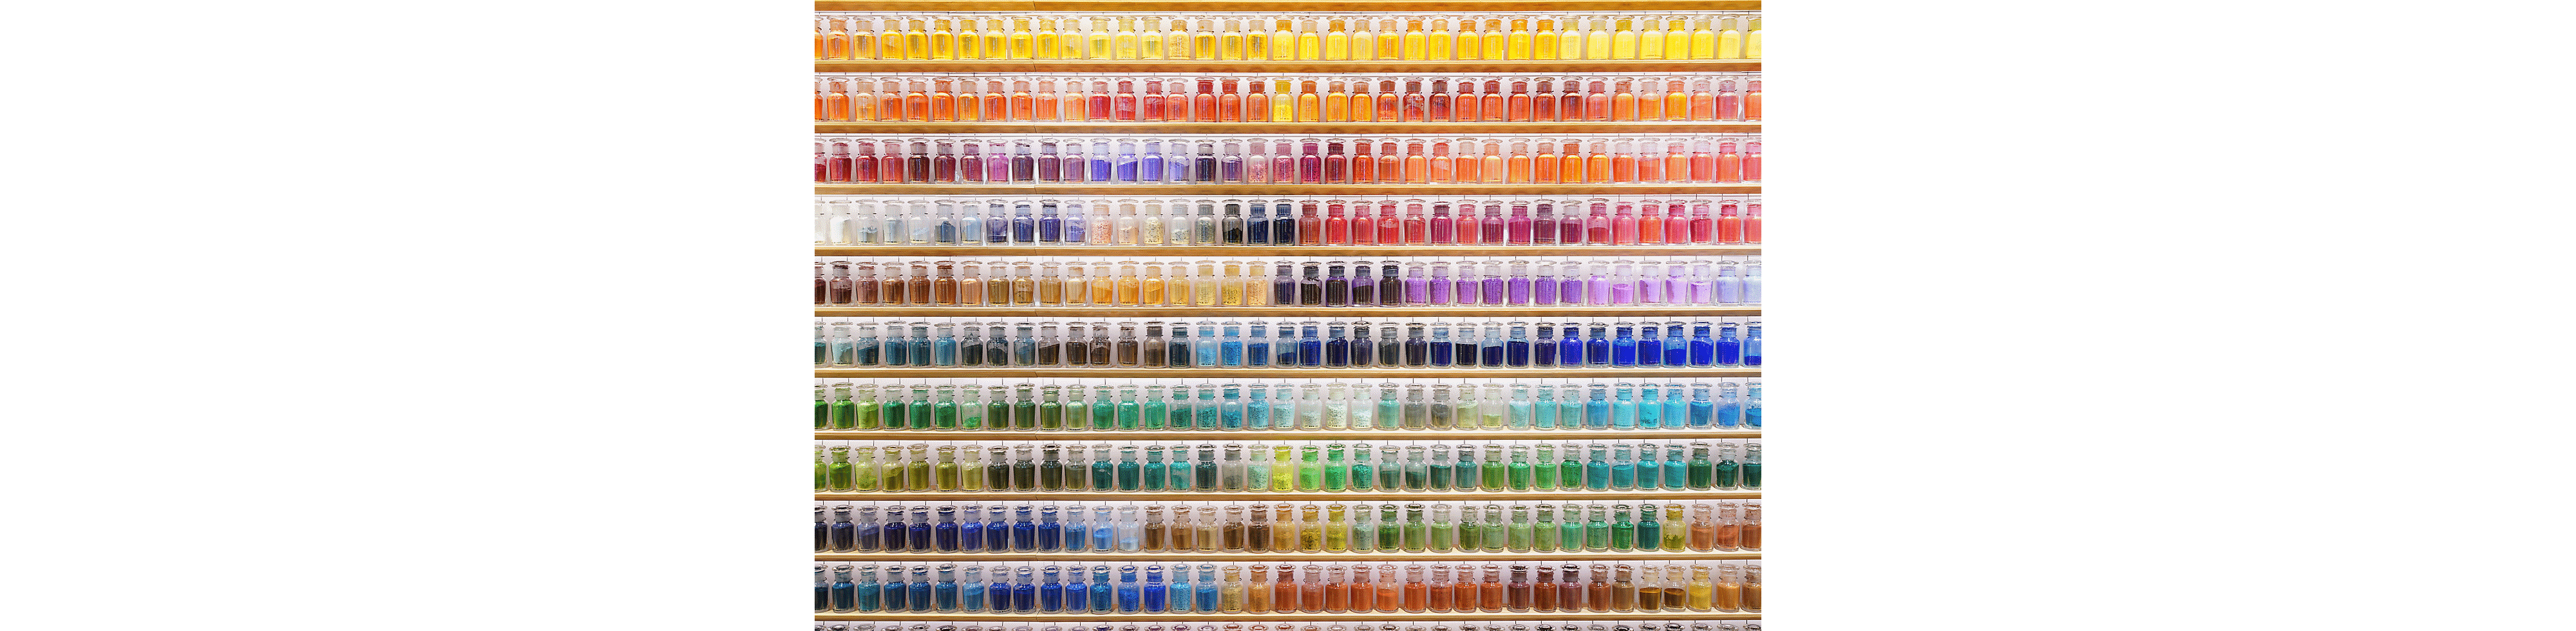 Primer slike na kojoj je zid prepun šarenih flaša